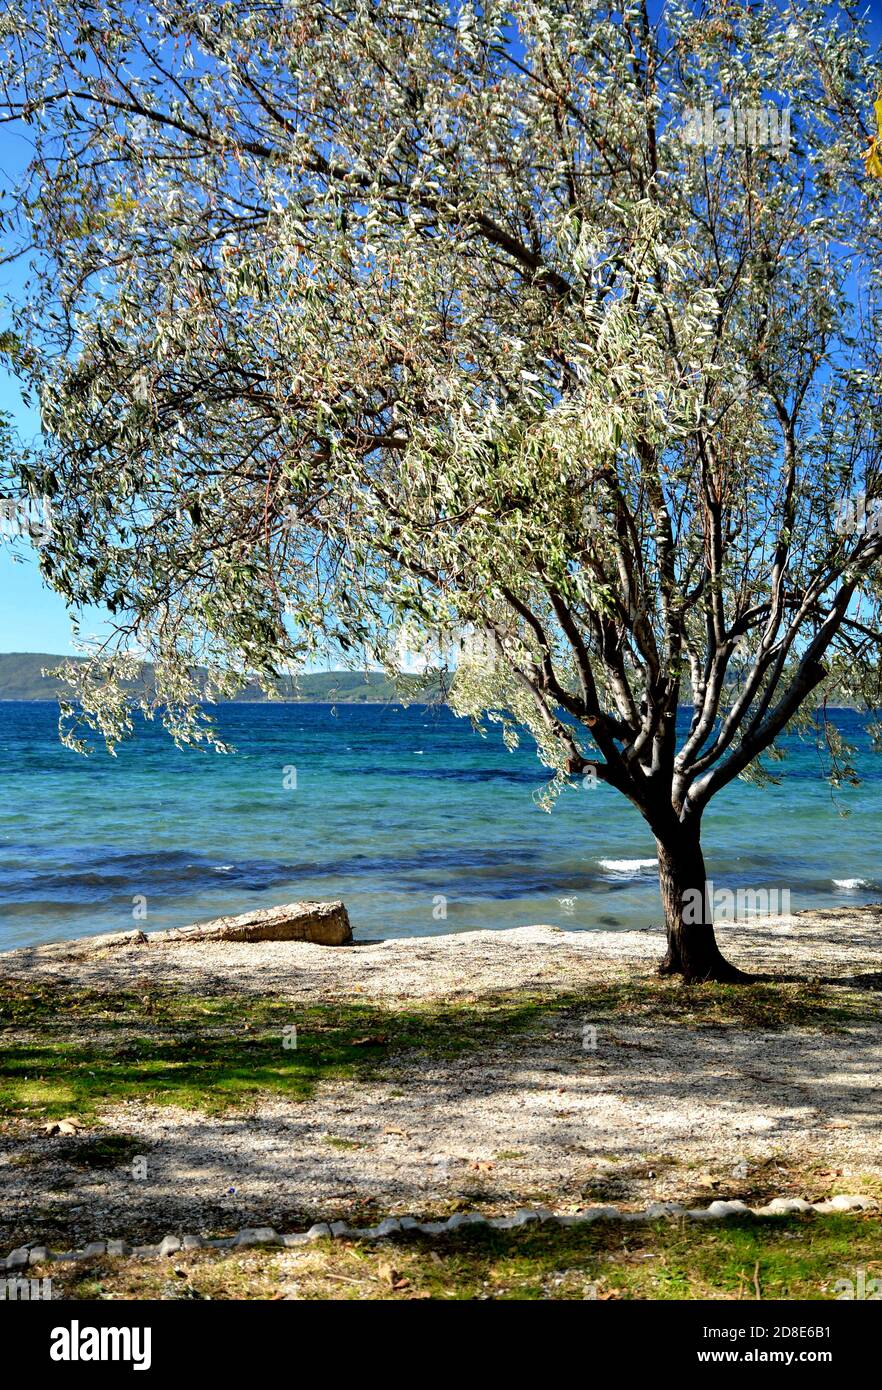 Einsamer, verzweigter Oleasterbaum gegen den blauen Himmel am Meer in der Herbstsaison. Elaeagnus angustifolia, russische Olive, persische Olive, will Olive, Silber berr Stockfoto